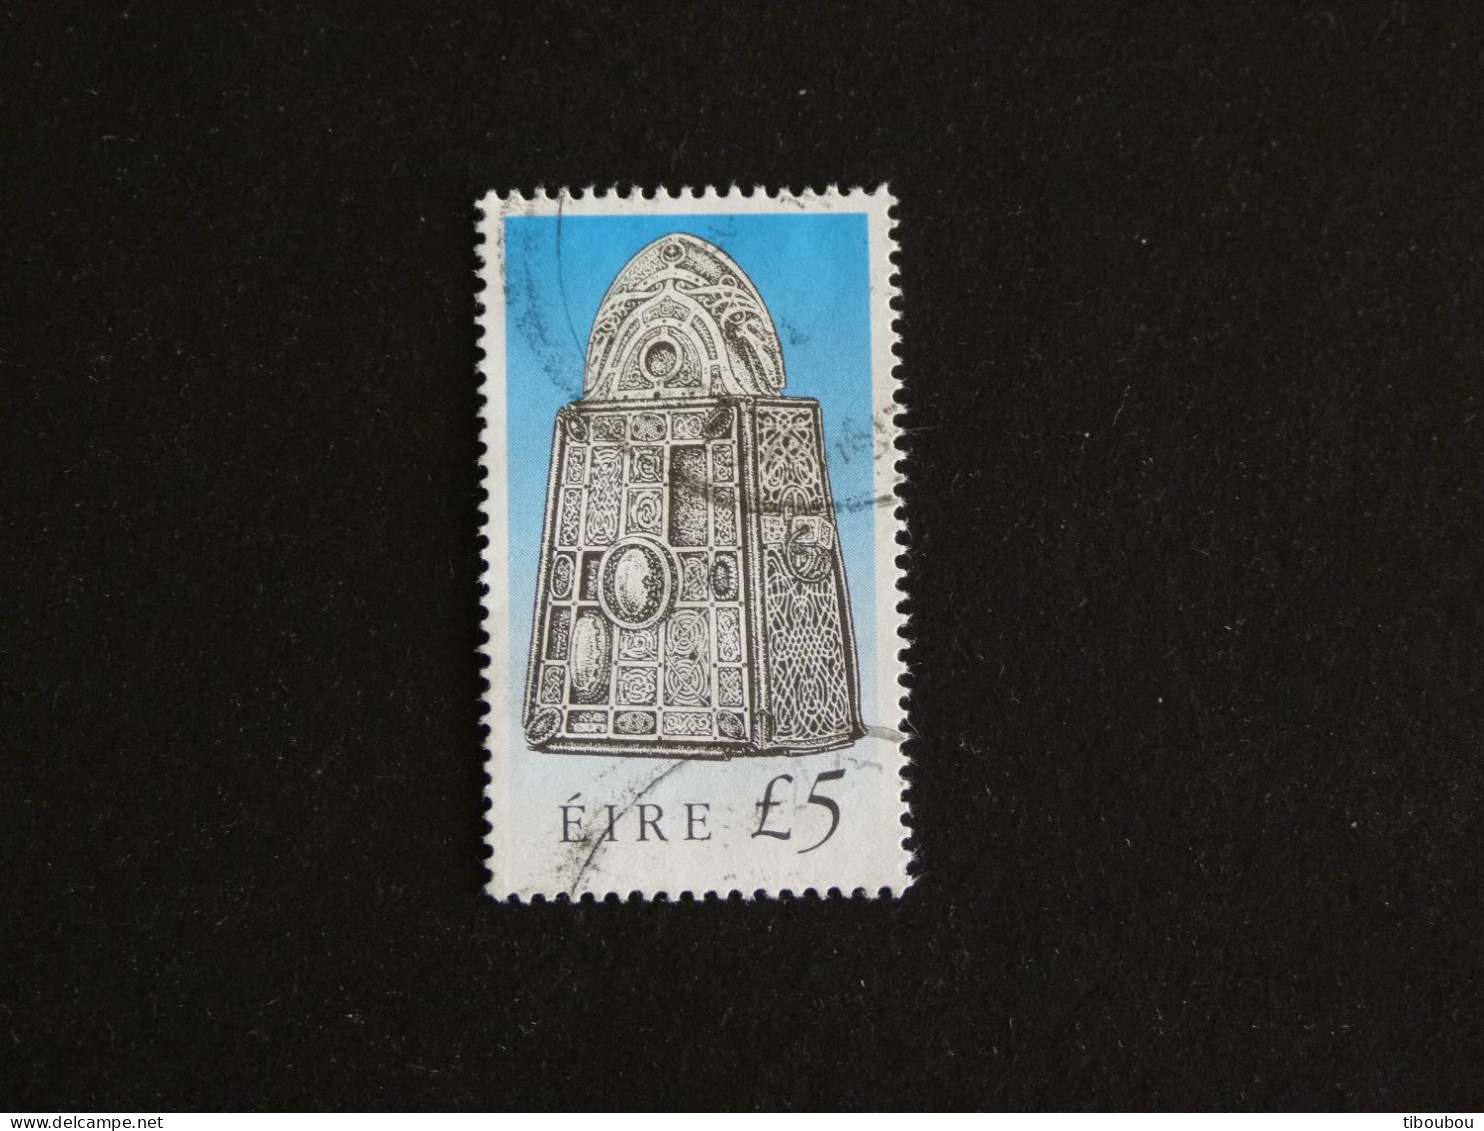 IRLANDE IRELAND EIRE YT 746 OBLITERE - CHASSE CONIQUE BLEUE DE SAINT PATRICK - Used Stamps